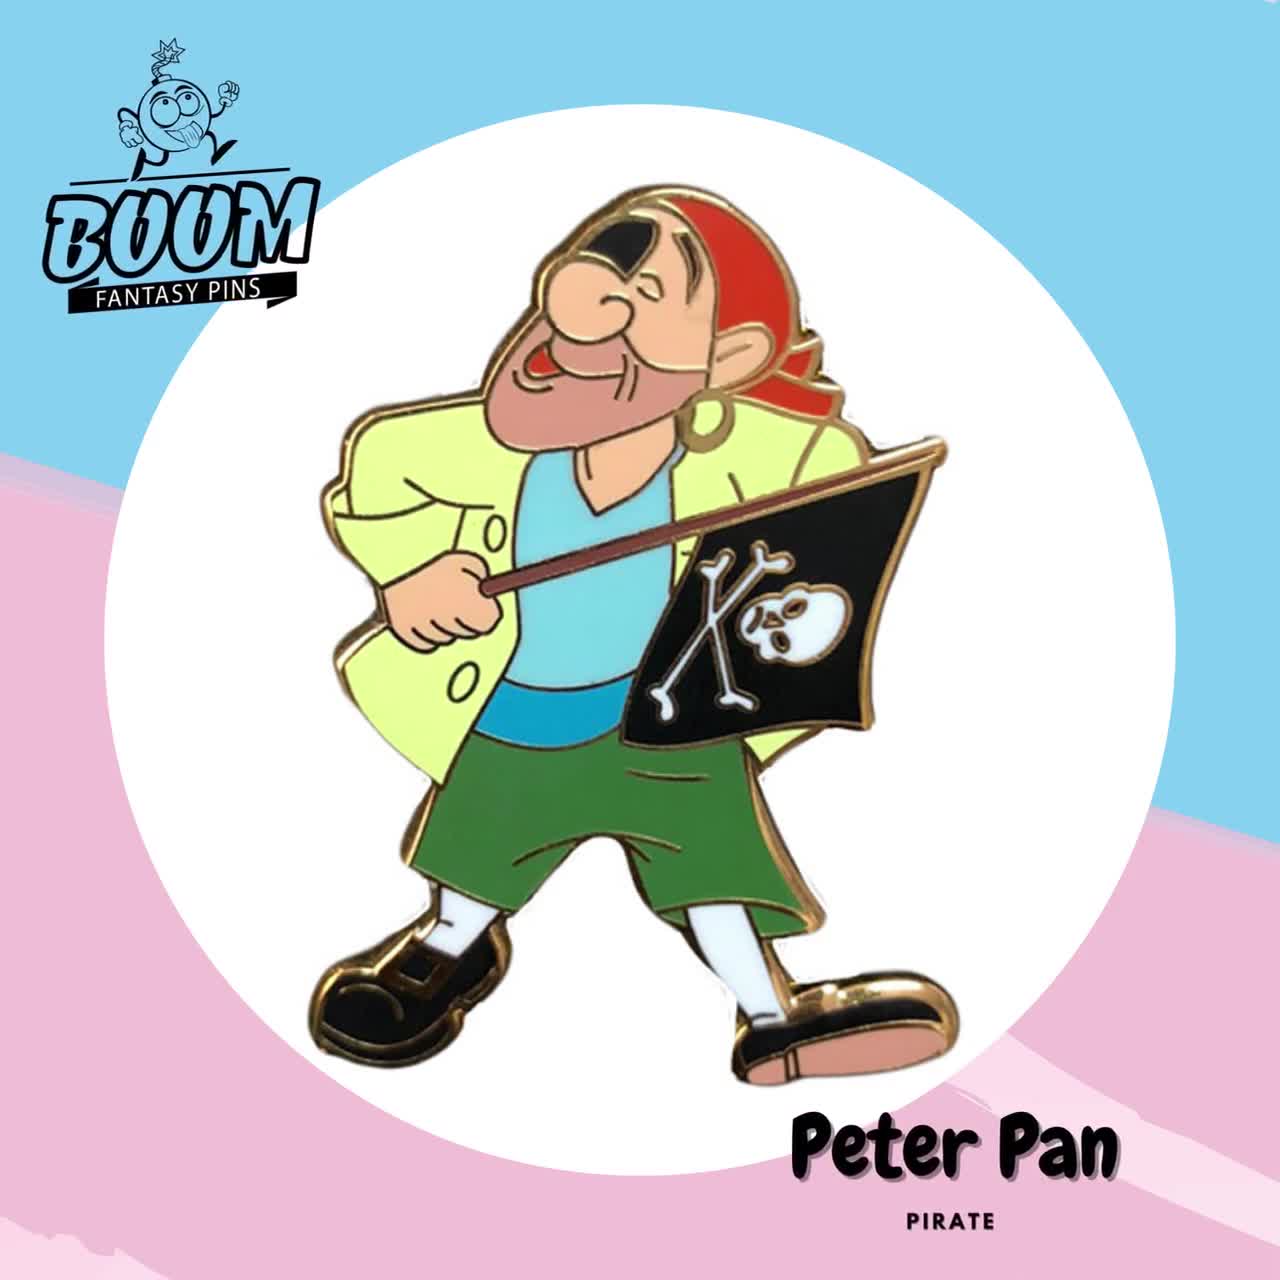 Peter Pan, Pirate Pin, Disney Fantasy Pin, Peter Pan for Disney